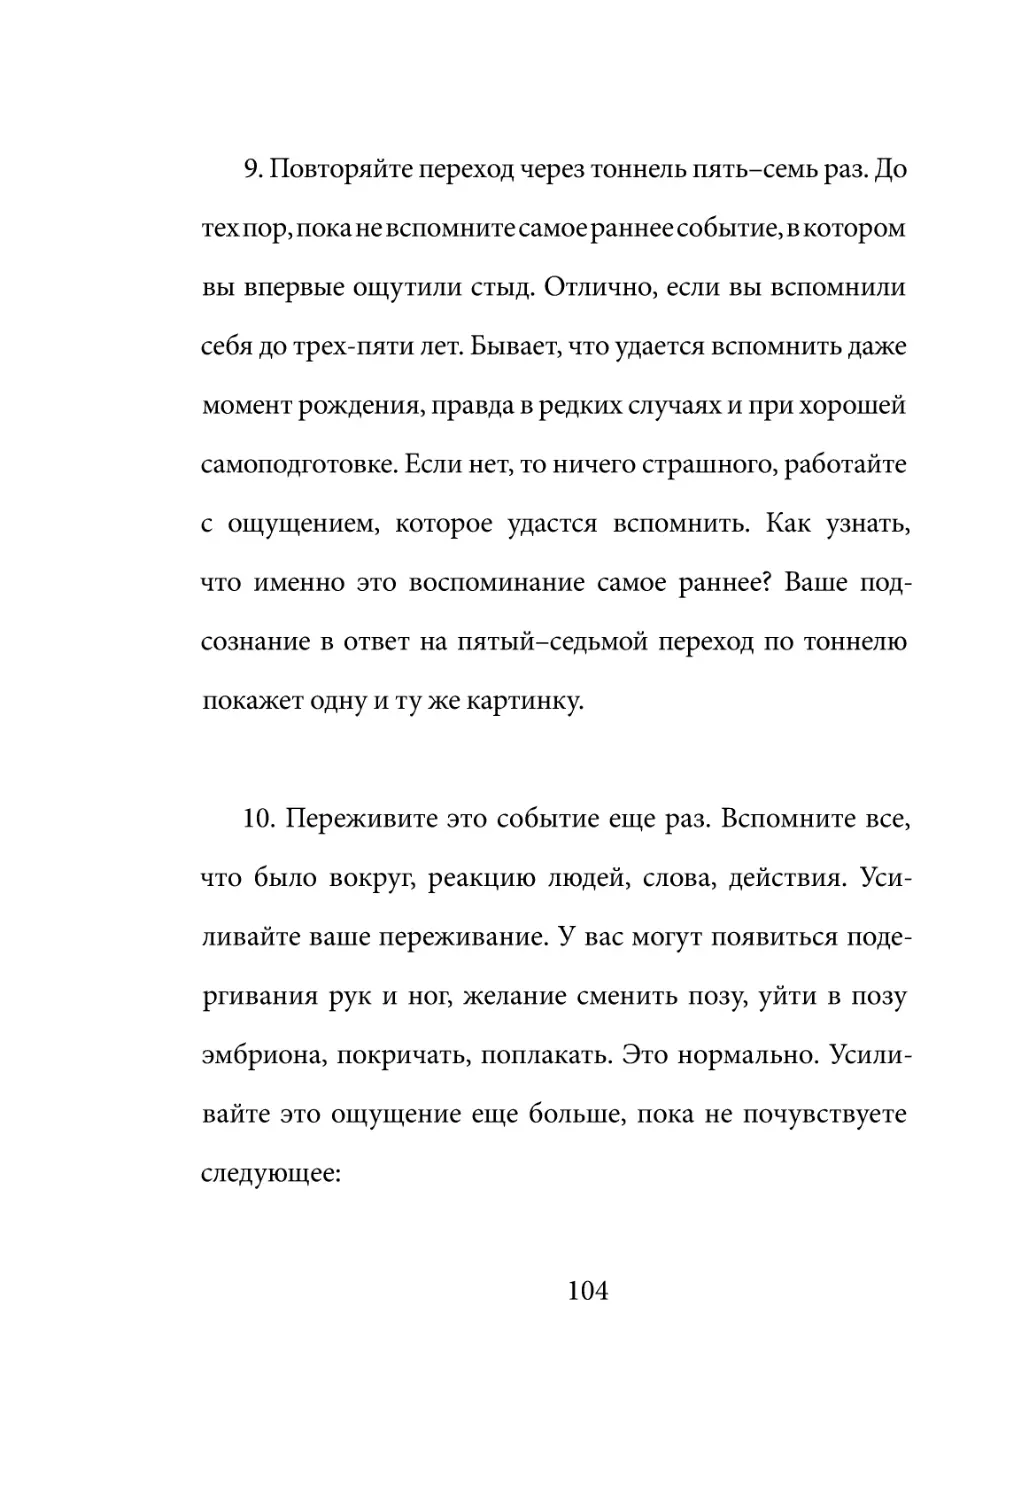 Sergey_Filippov_Dnevnik_samorazvitia_Evolyutsia_Vnutrennego_Sostoyania_104.pdf (p.104)